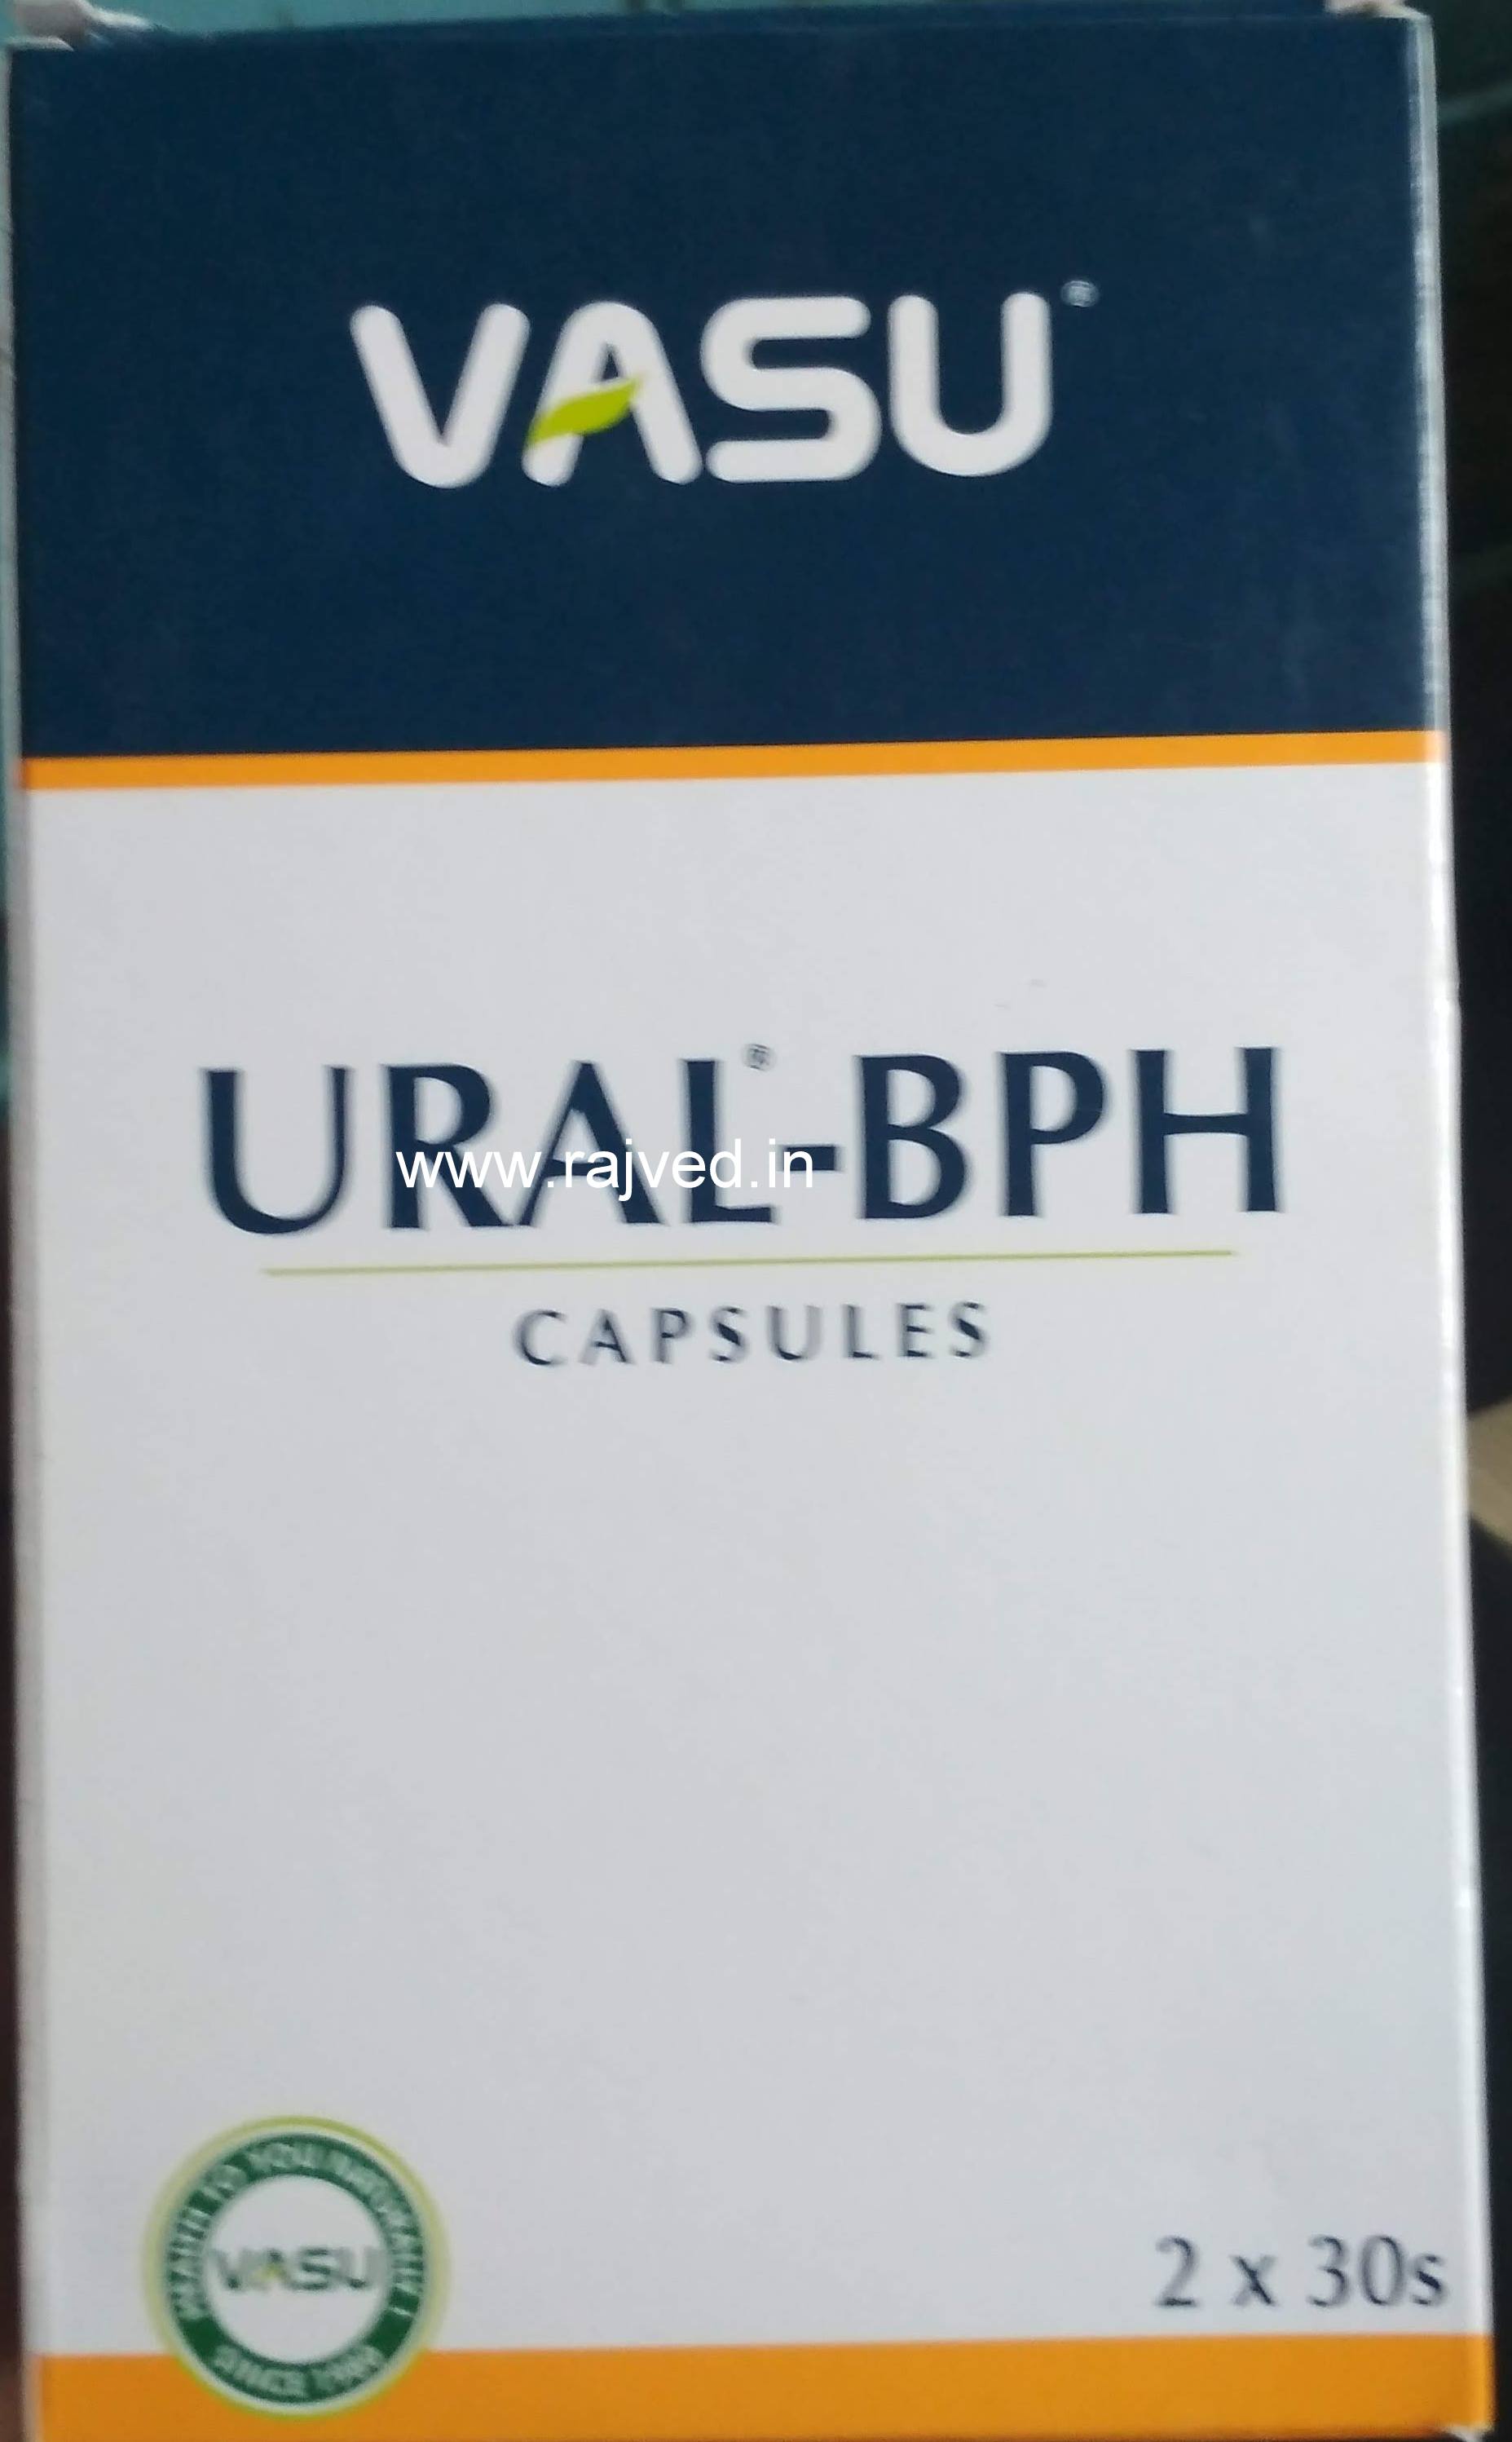 Ural-BPH capsule 120cap Vasu Pharmaceuticals